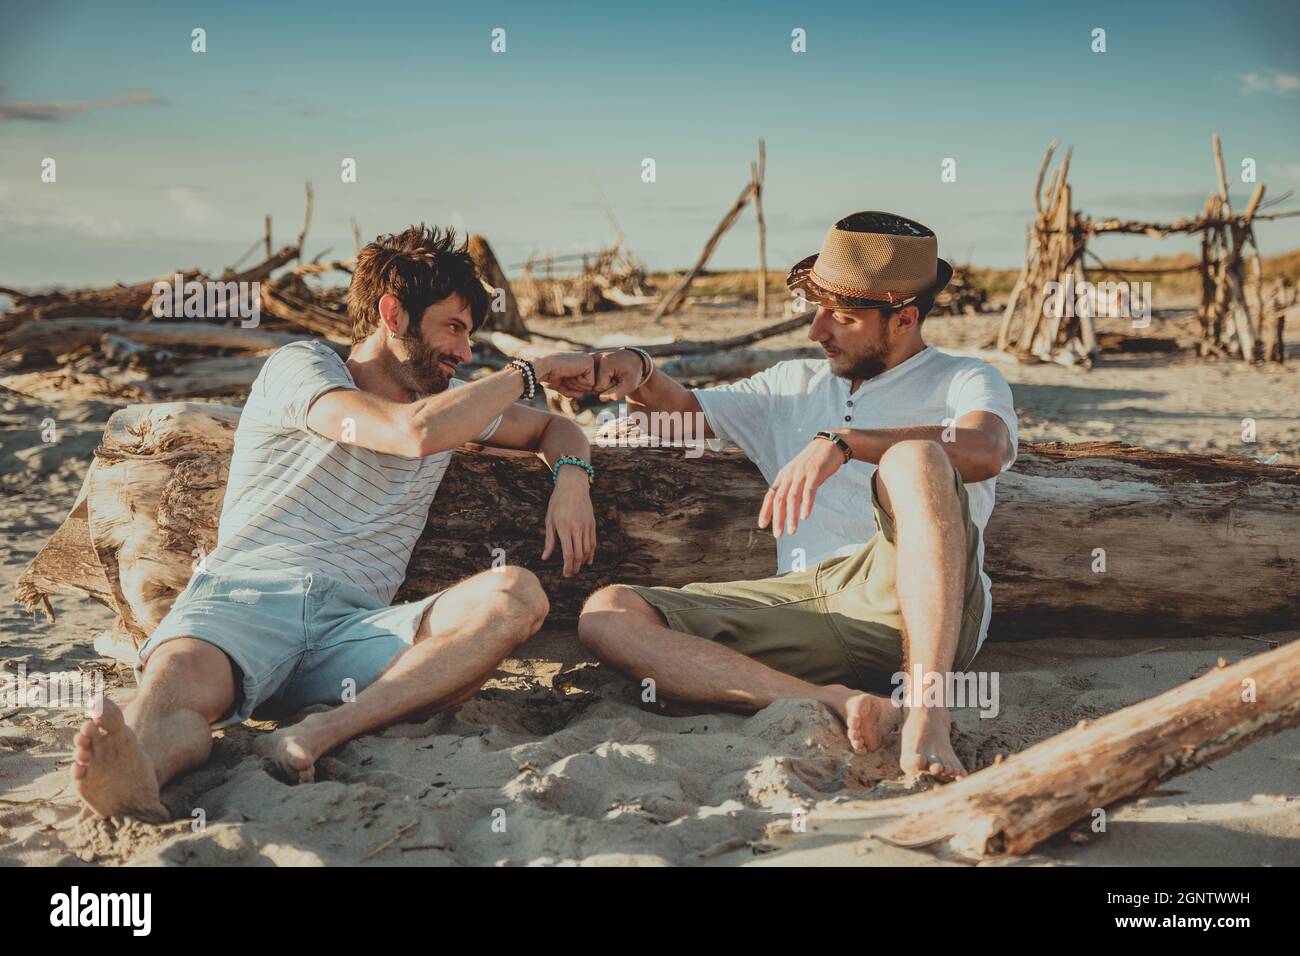 Zwei Jungen, die am Strand sitzen und sich mit ihren Fäusten begrüßen. Junge Menschen klopfen mit den Fäusten, um sich gegenseitig zu begrüßen Stockfoto